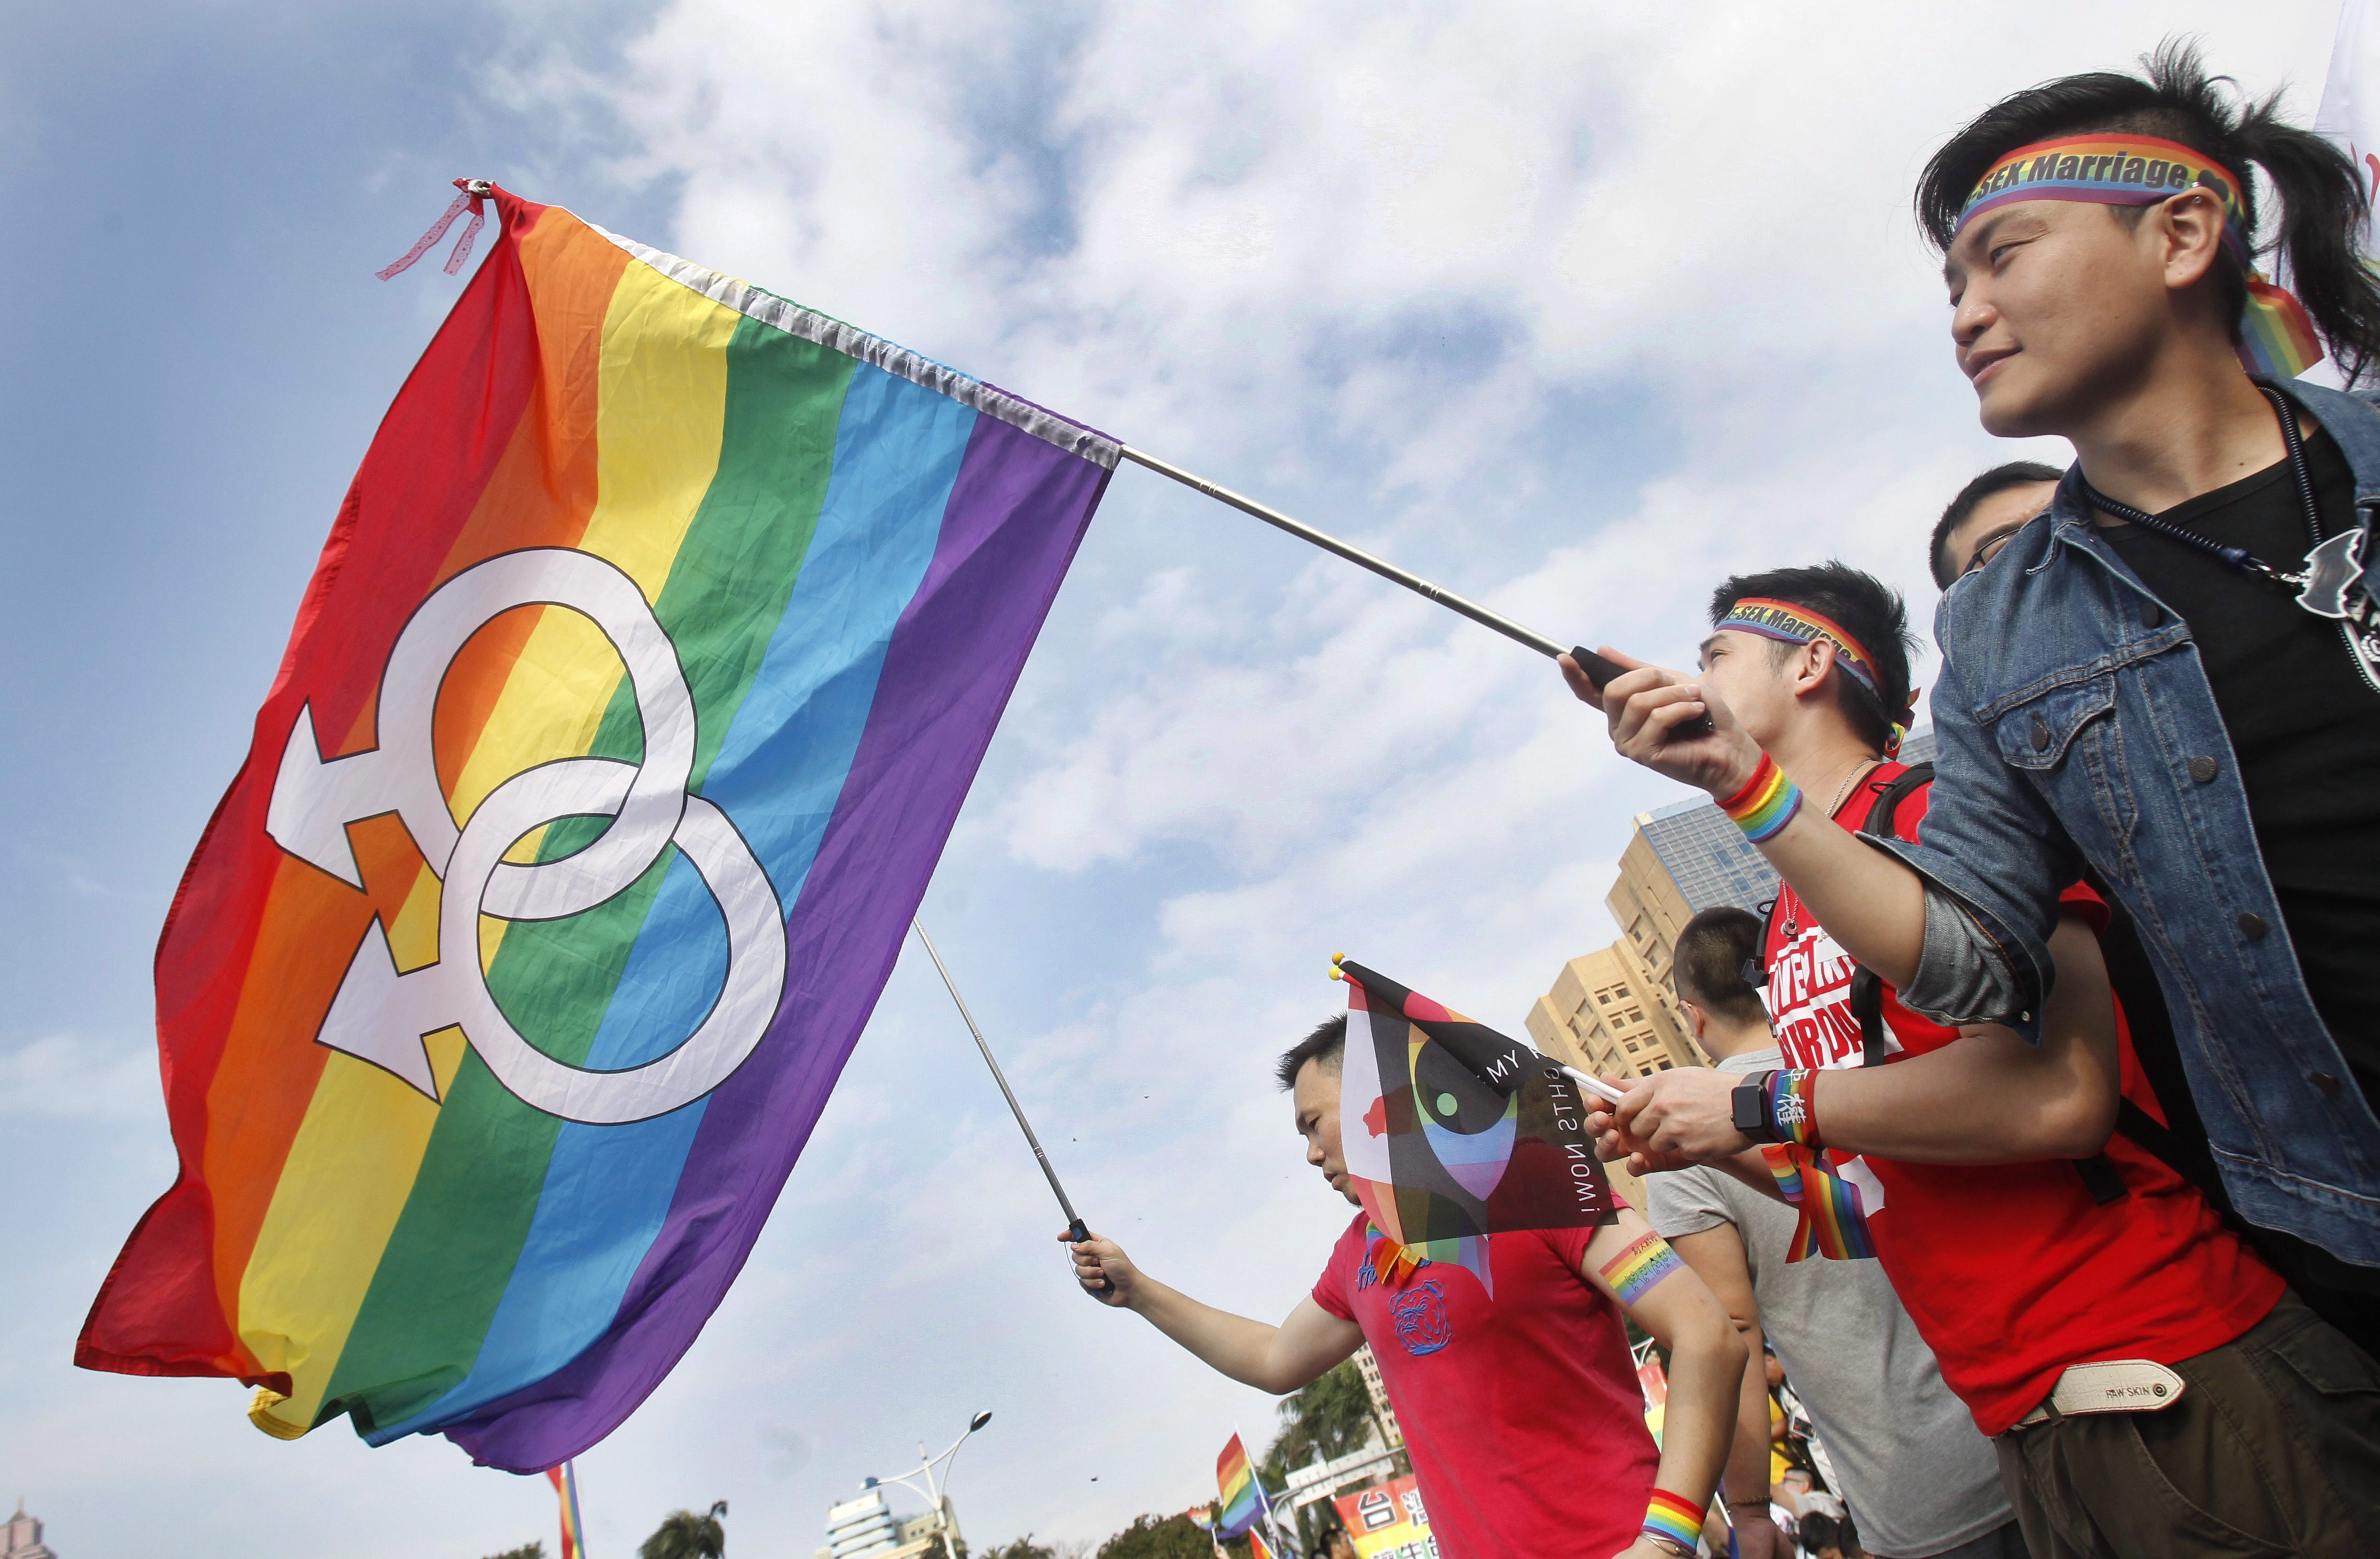 “我们是亚裔、同性恋、并深感自豪”